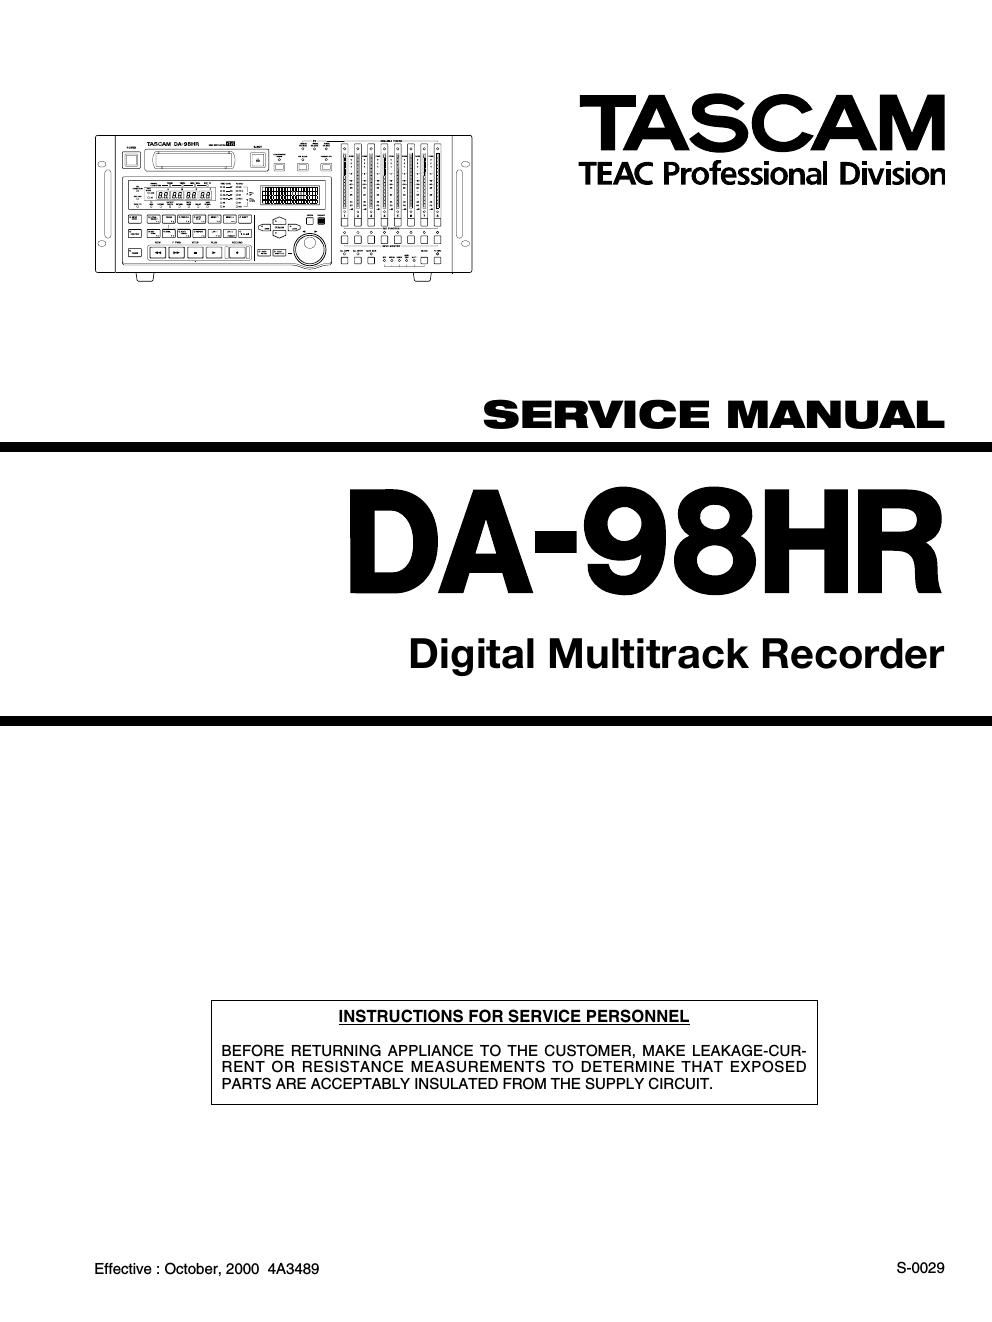 Tascam DA 98HR Service Manual